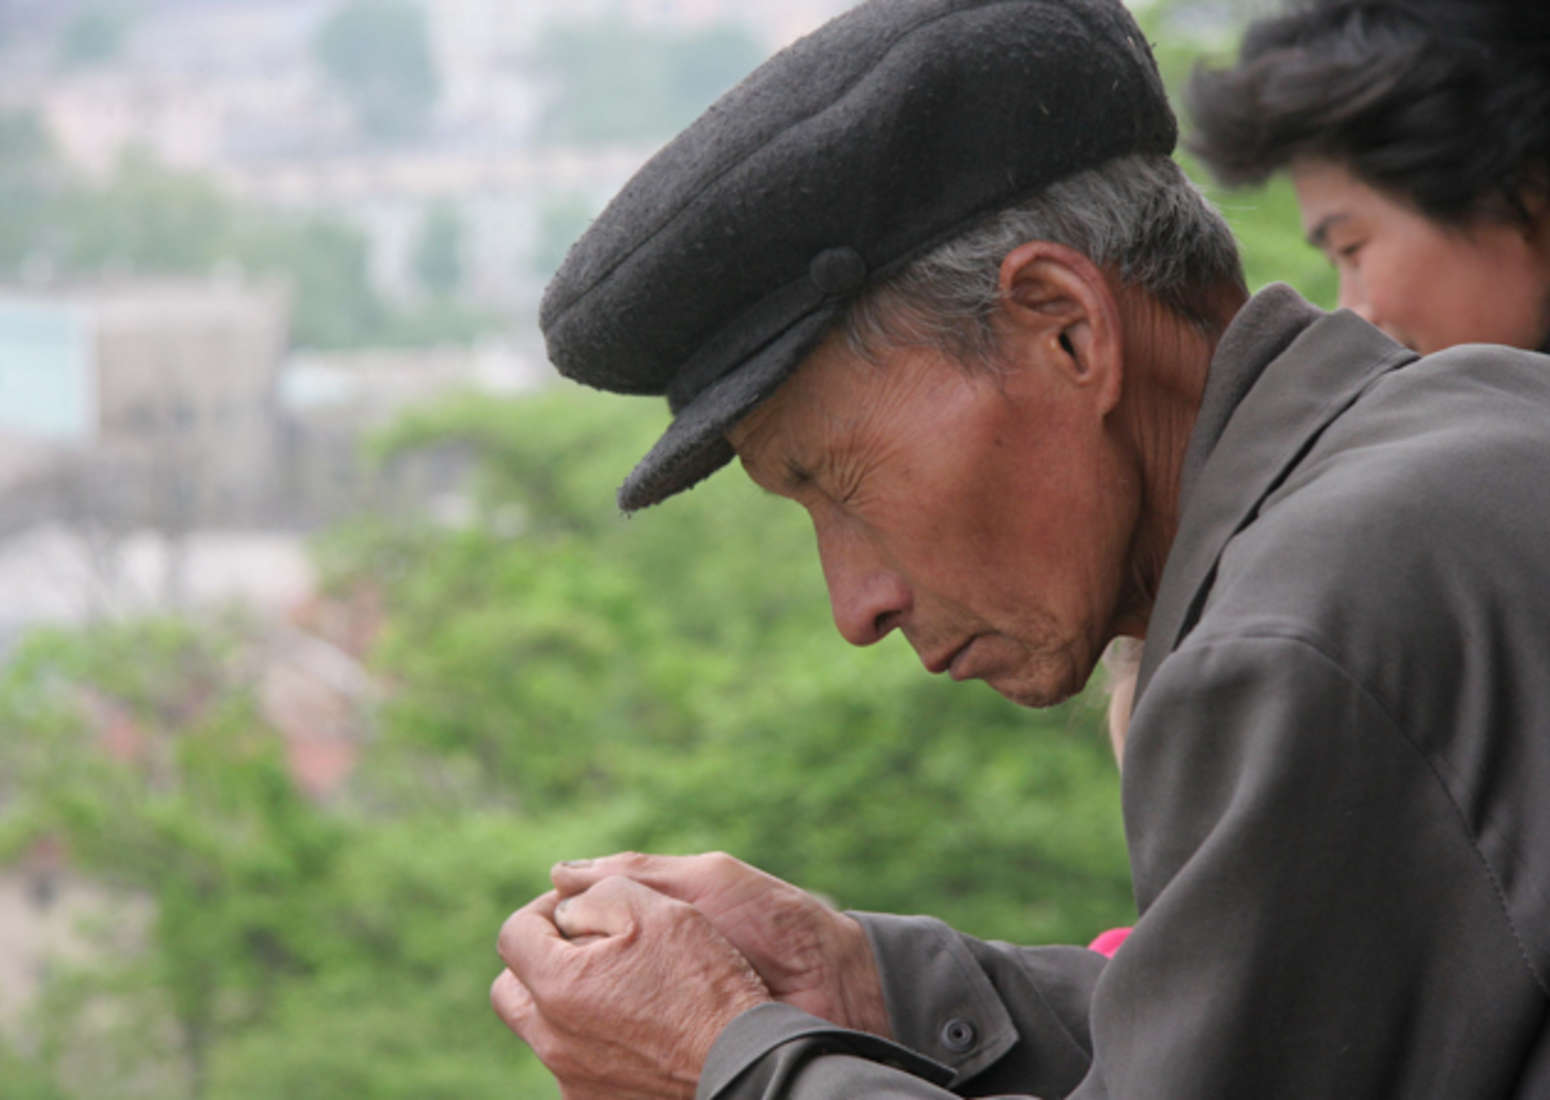 Praying in North Korea